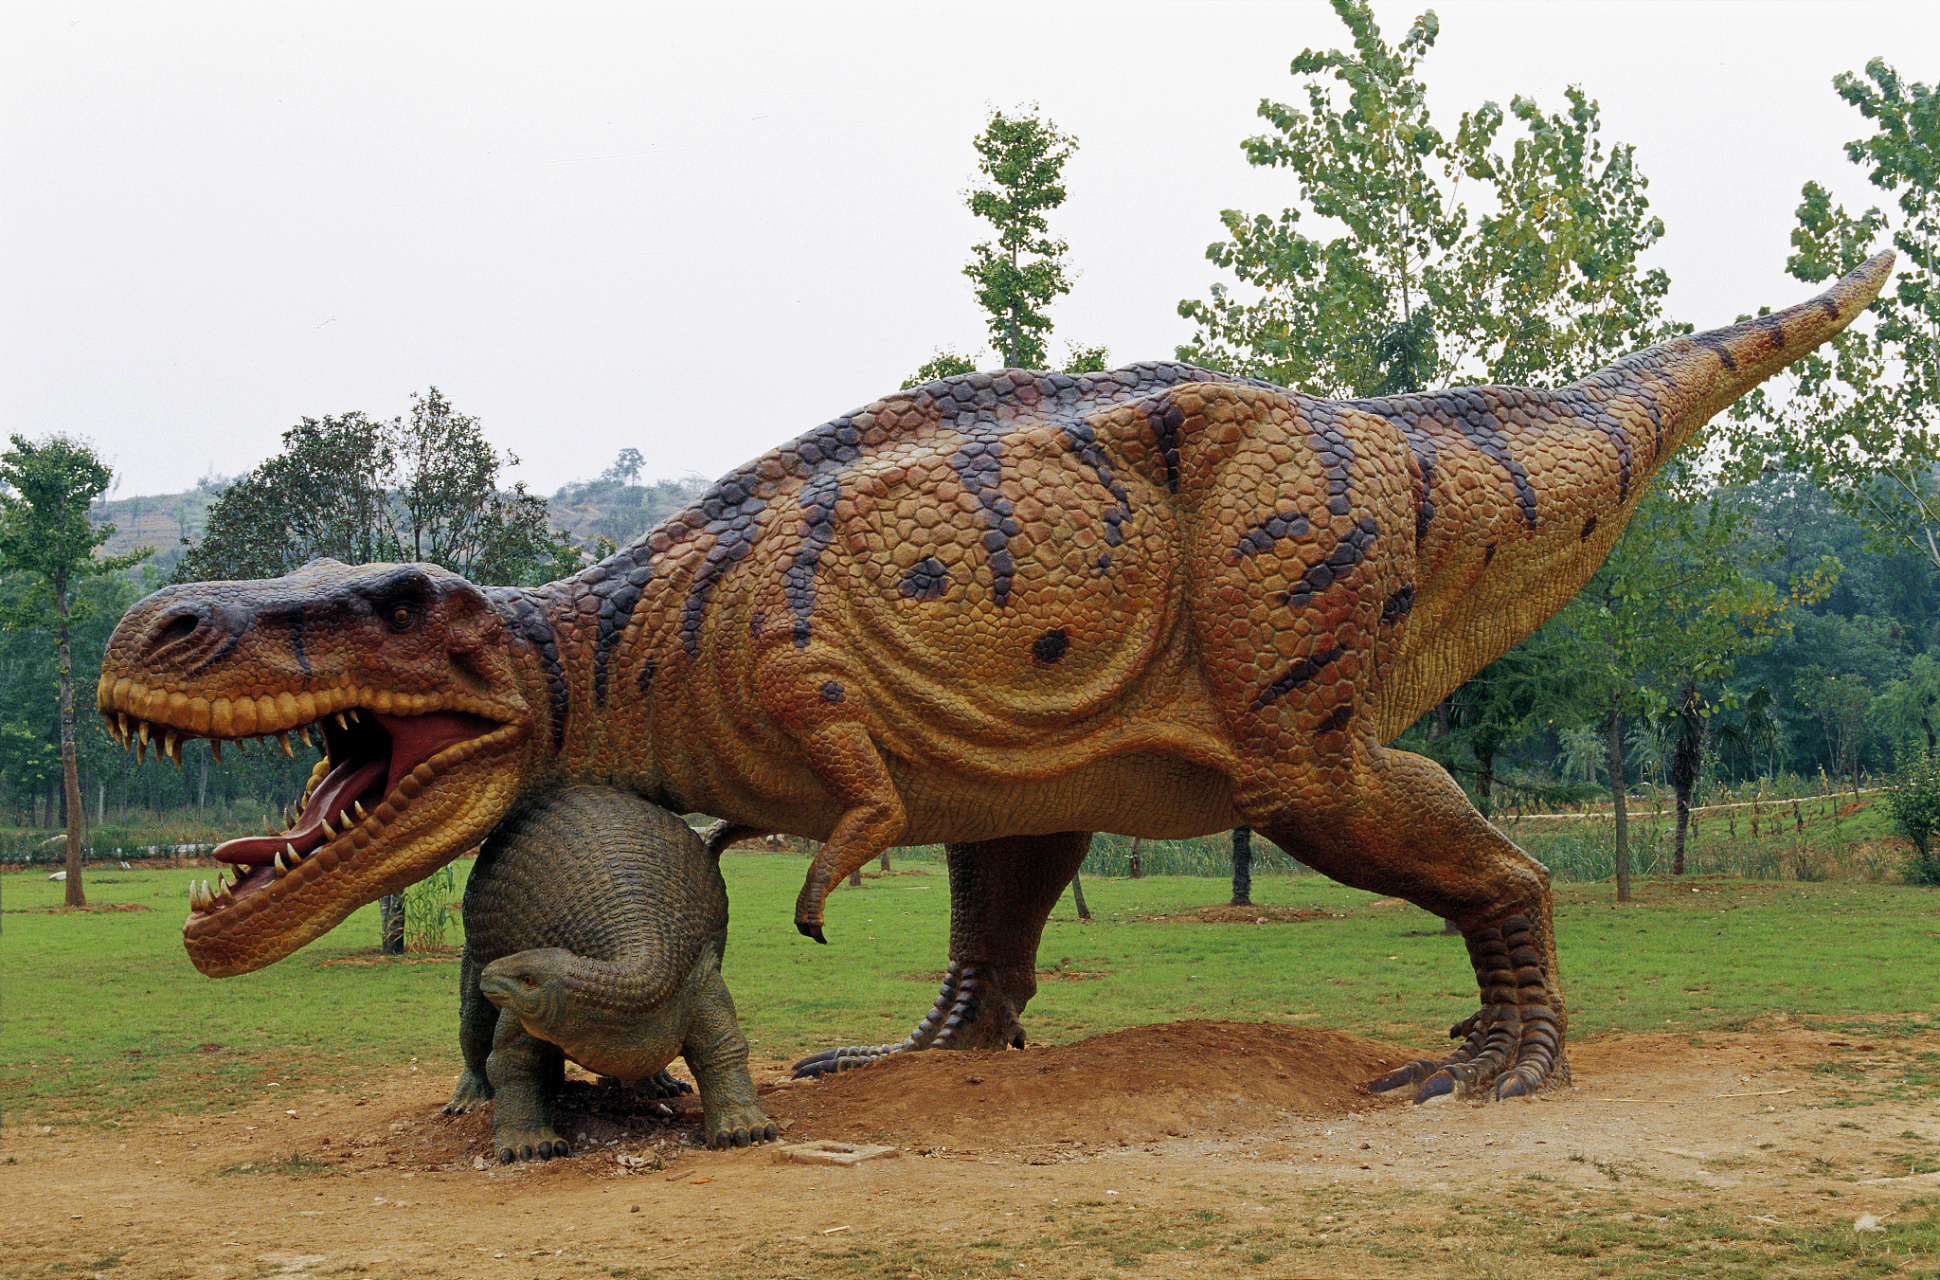 南阳西峡恐龙遗迹园:位于河南省南阳市西峡县,是一座以恐龙蛋化石群为